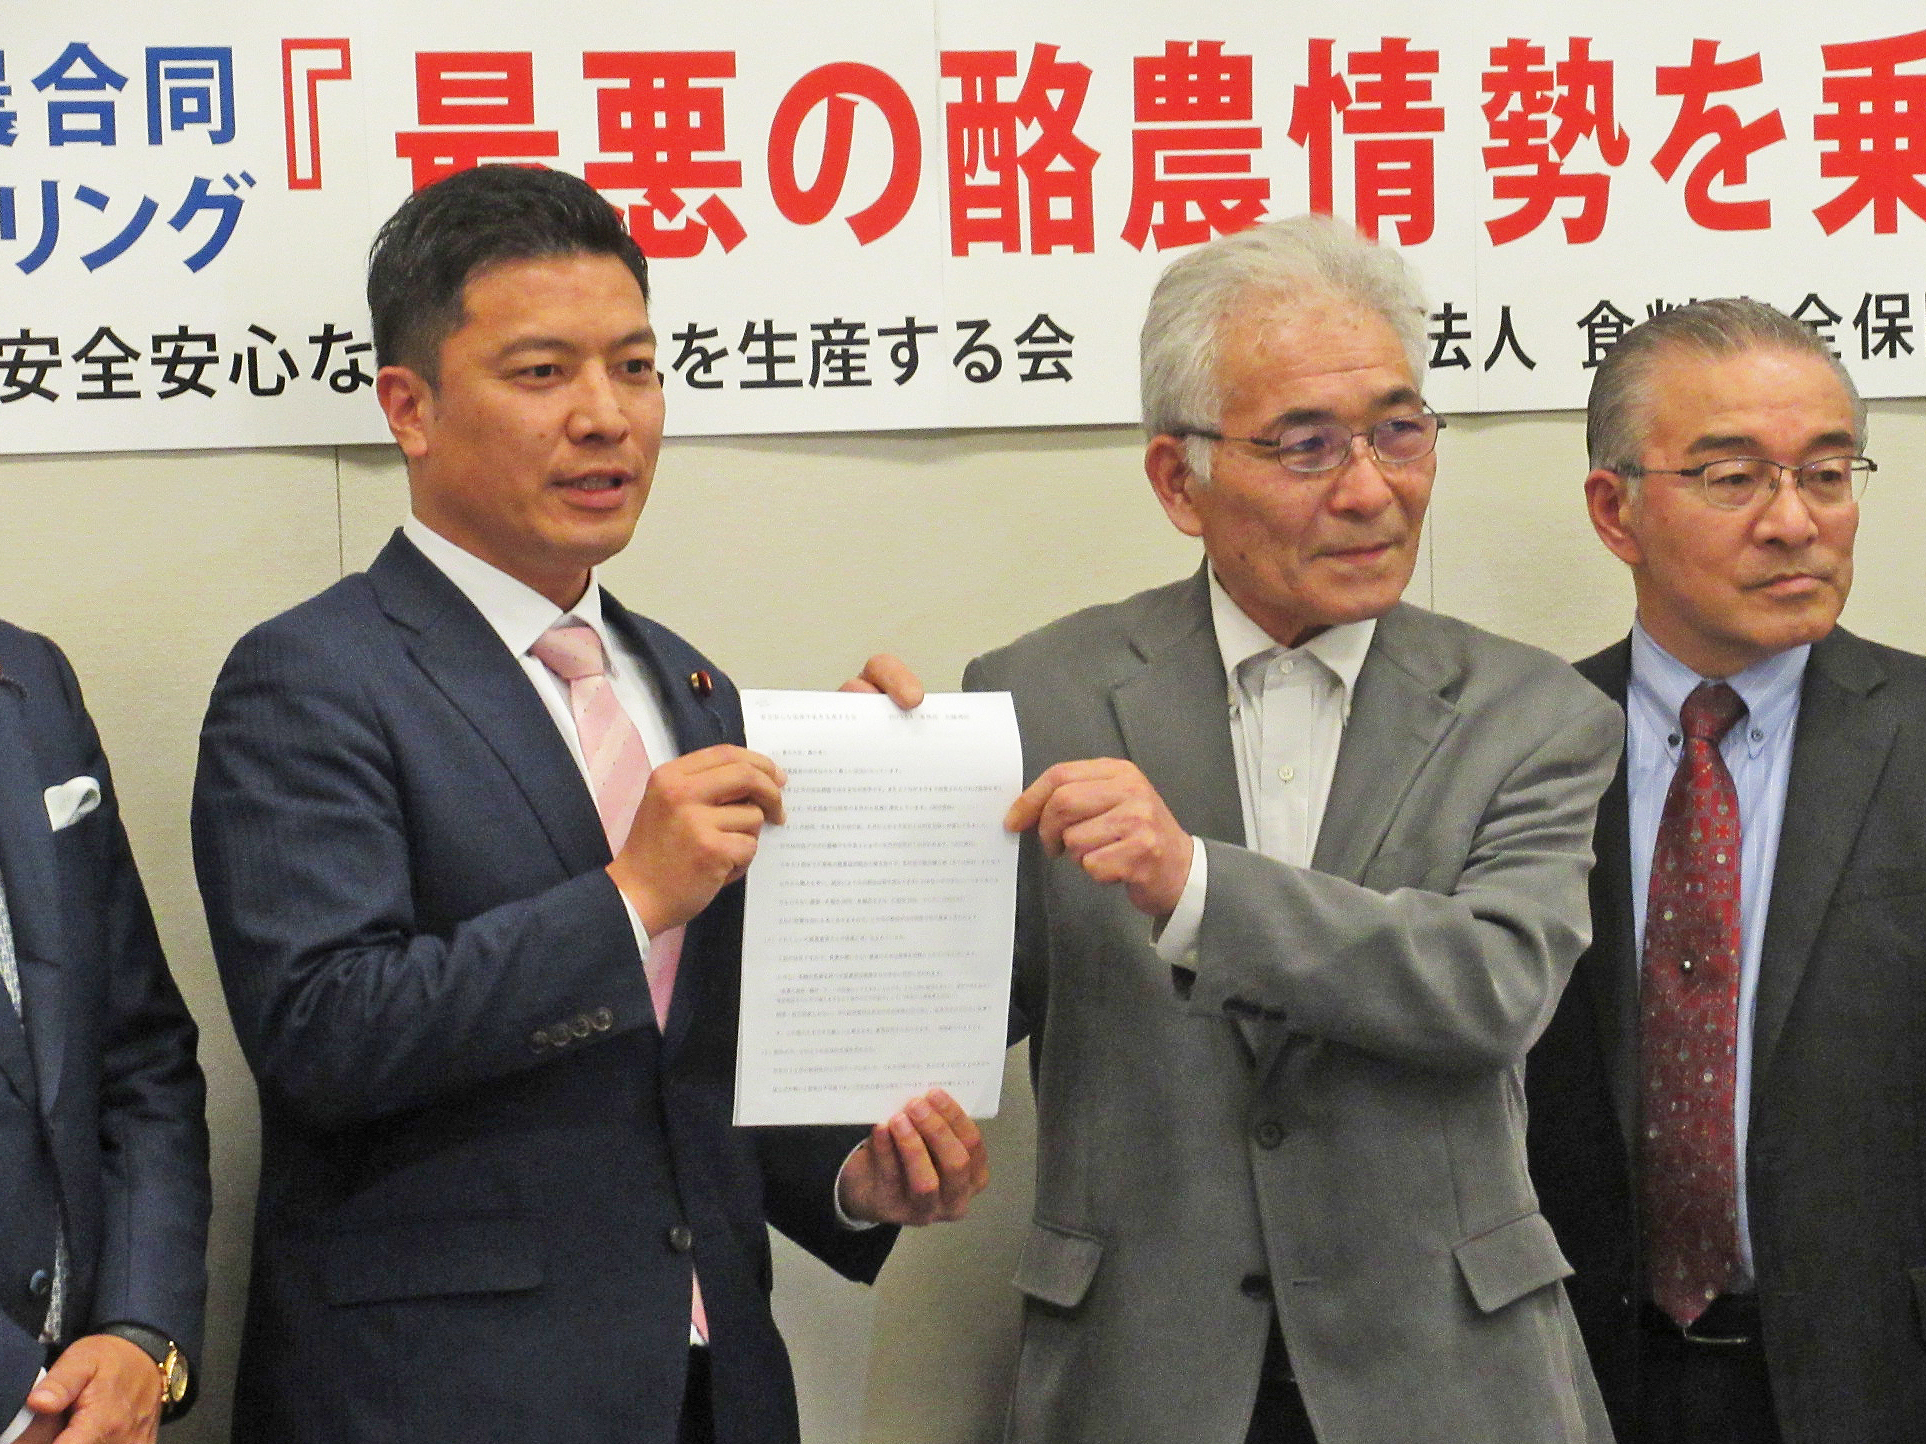 立憲民主党の山田勝彦議員（左）に要望書を手渡しする石橋祐行さん